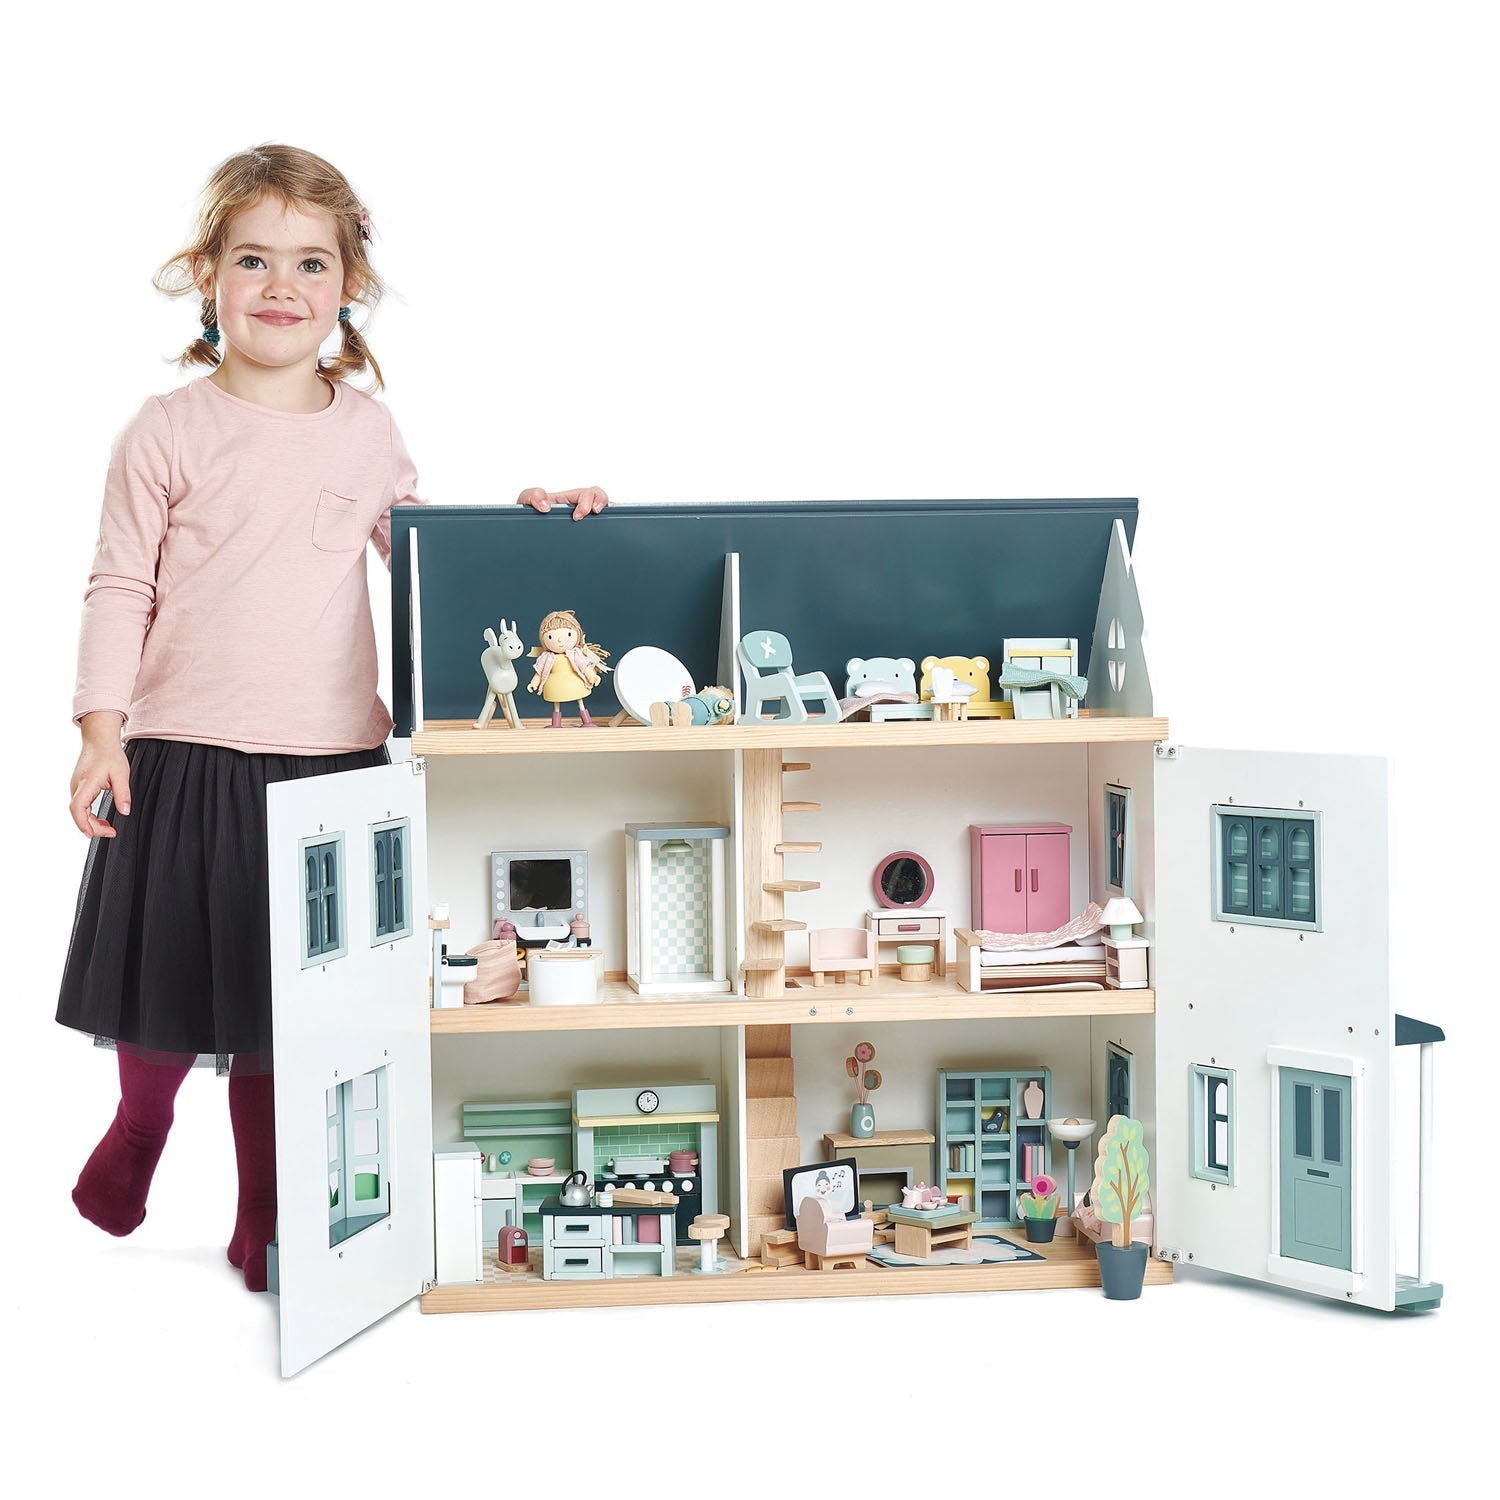 Dolls House Bedroom Furniture by Tender Leaf Toys